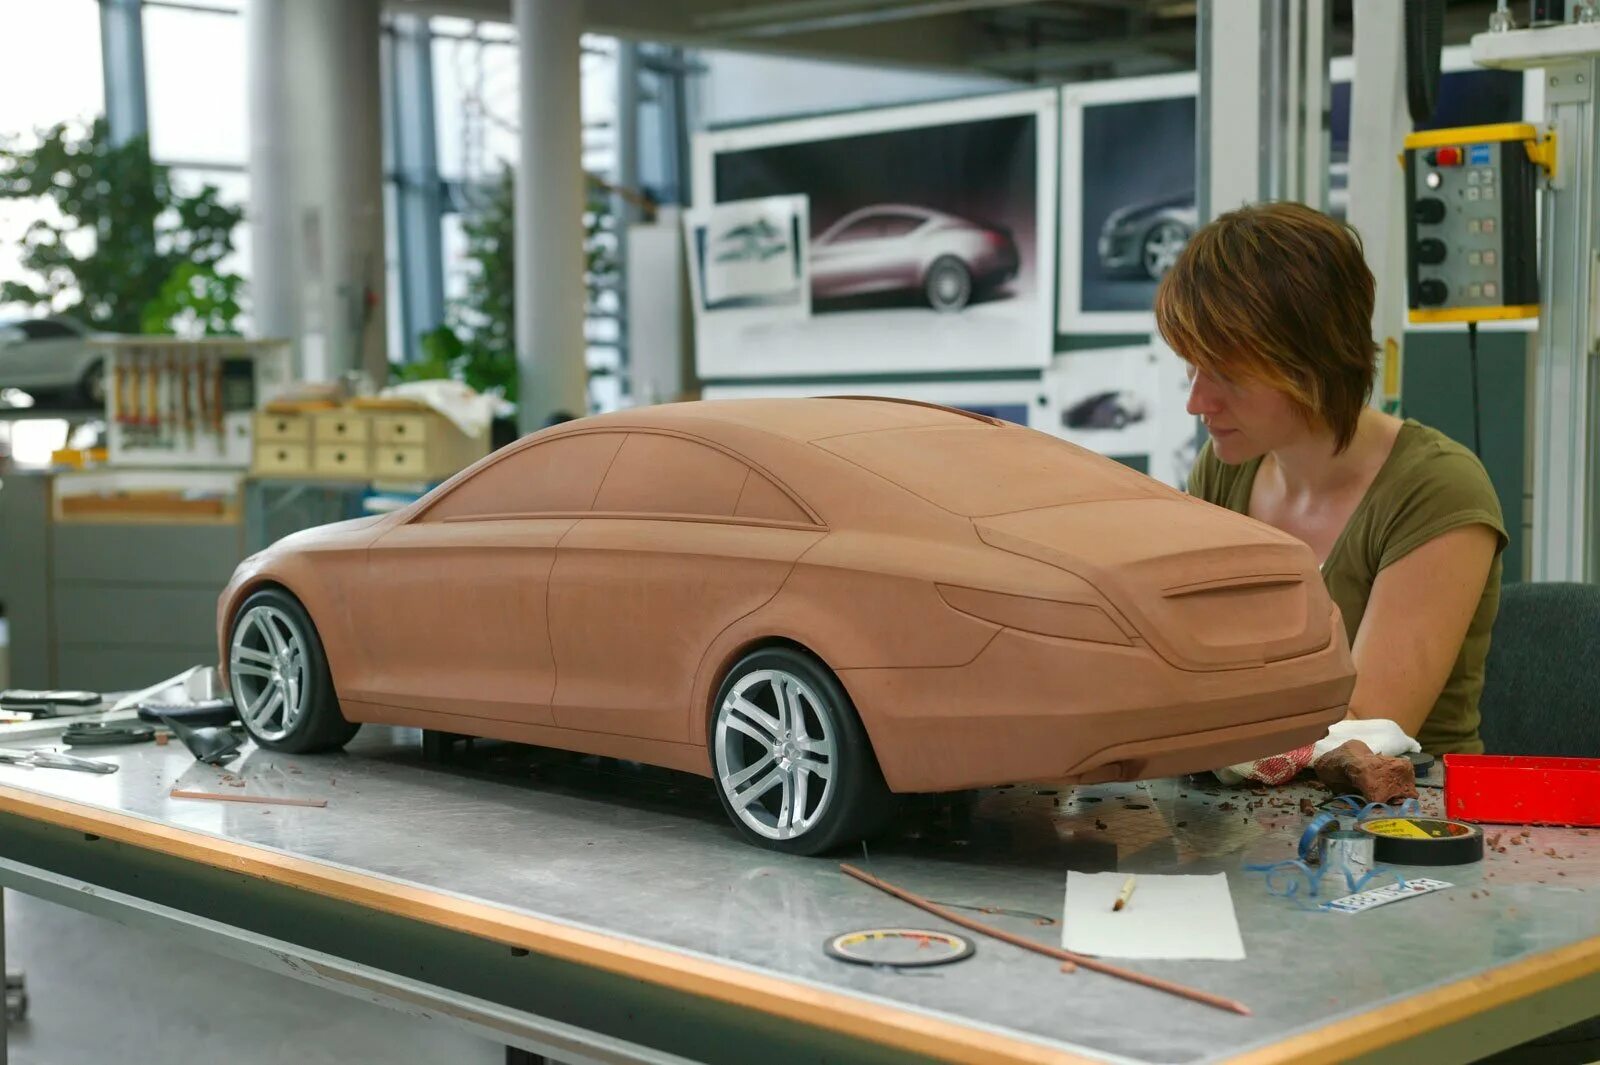 Изготовление 3 моделей. 3d моделирование в автопромышленности. Макет автомобиля. Муляж автомобиля. Пластилиновые макеты автомобилей.